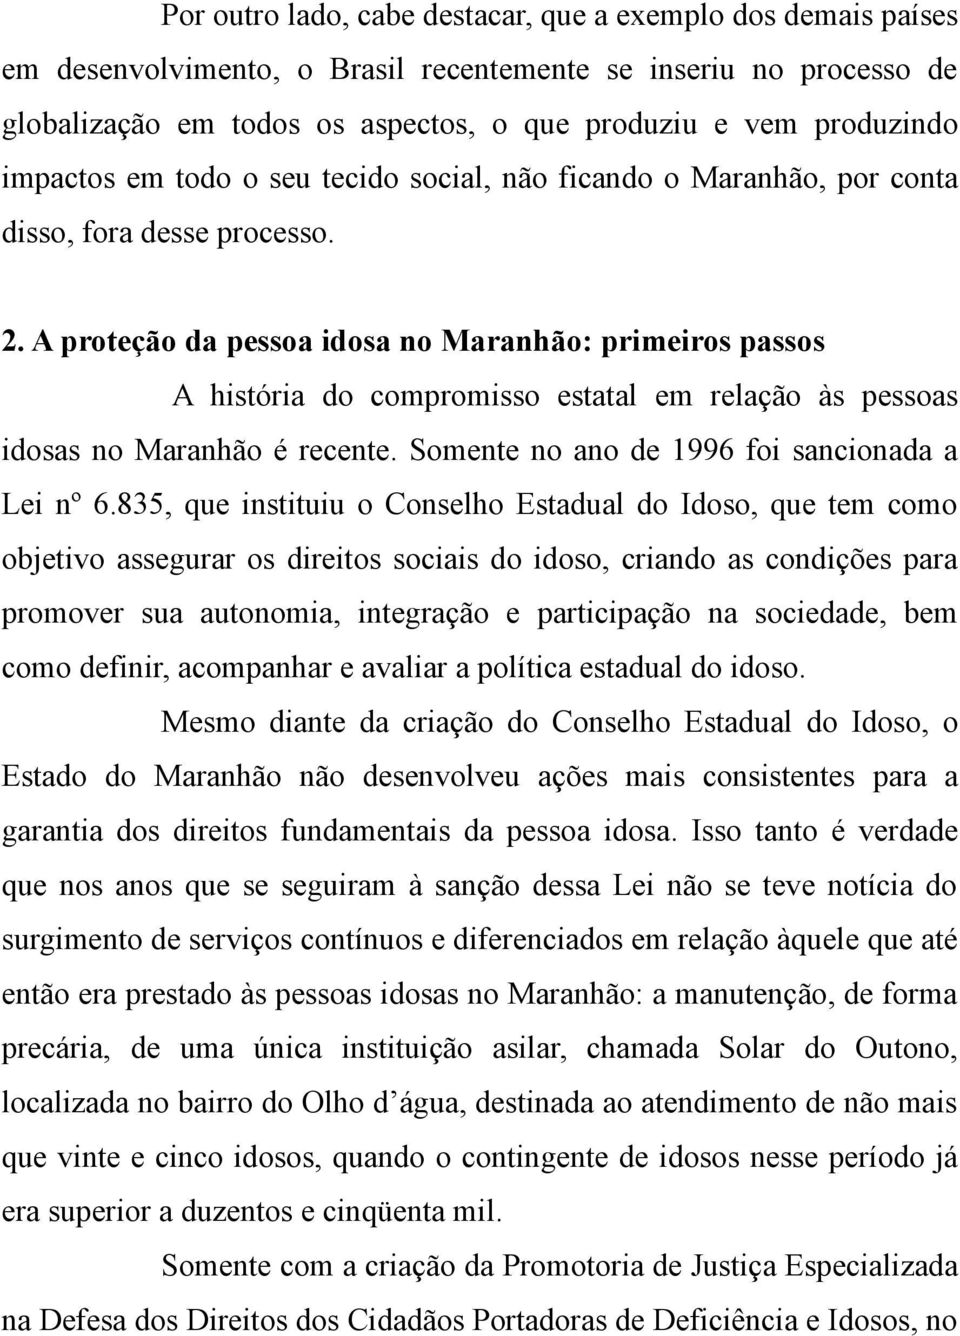 A proteção da pessoa idosa no Maranhão: primeiros passos A história do compromisso estatal em relação às pessoas idosas no Maranhão é recente. Somente no ano de 1996 foi sancionada a Lei nº 6.